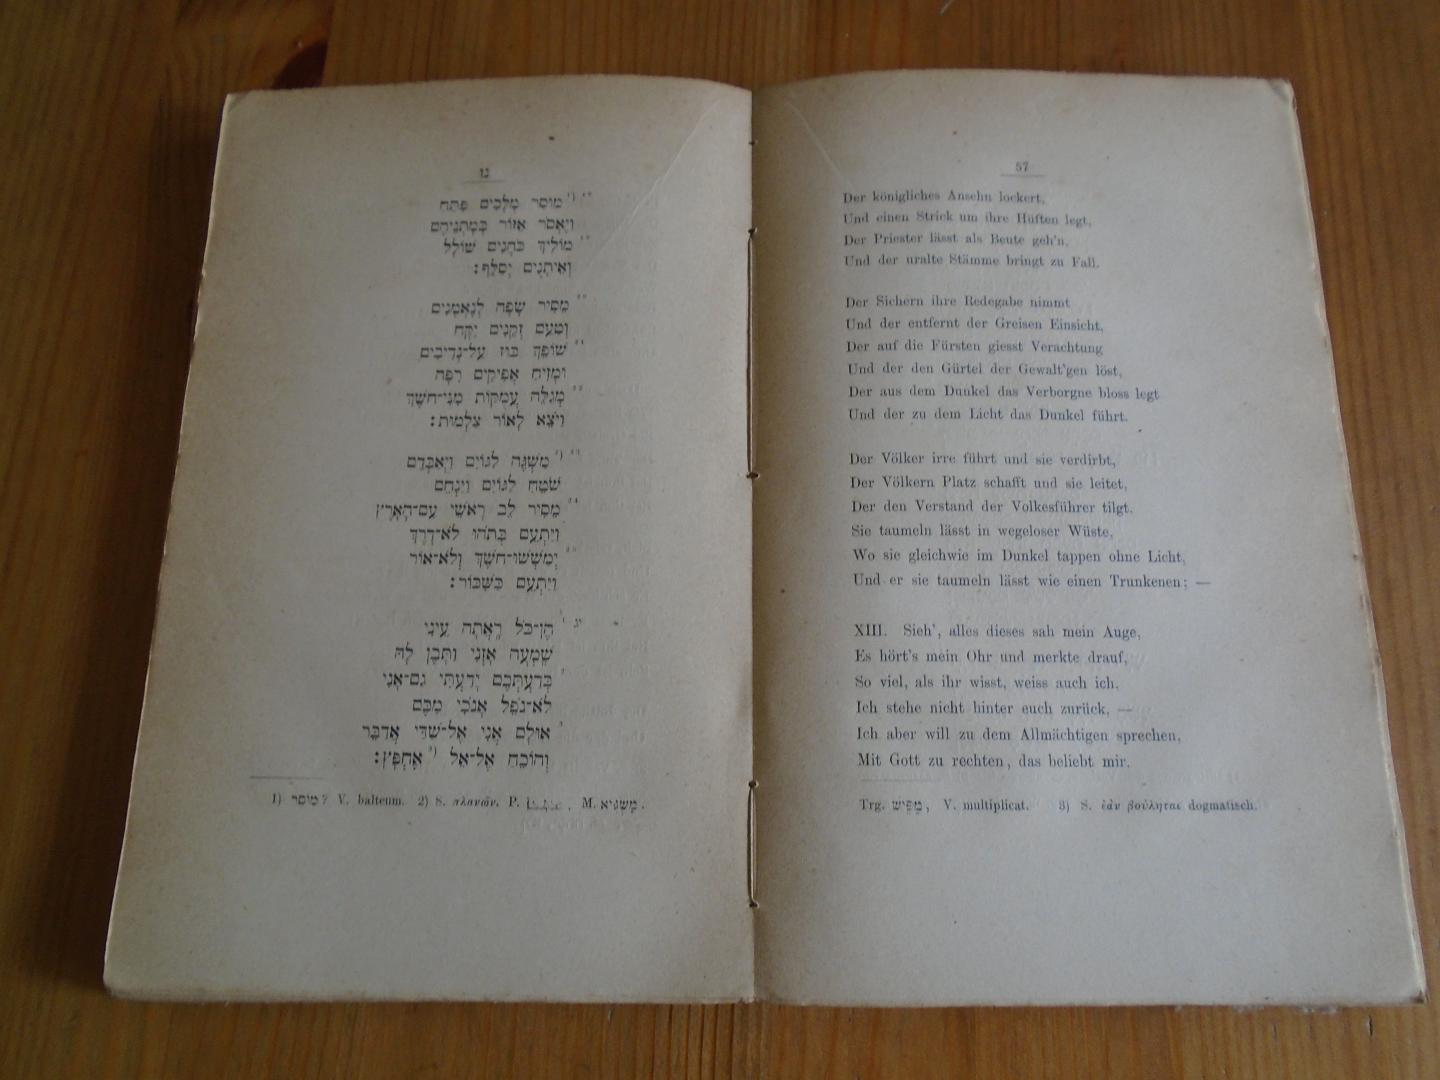 Merx, Adalbert - Das Gedicht von Hiob. Hebräischer Text, kritisch bearbeitet und übersetzt, nebst sachlicher und kritischer Einleitung